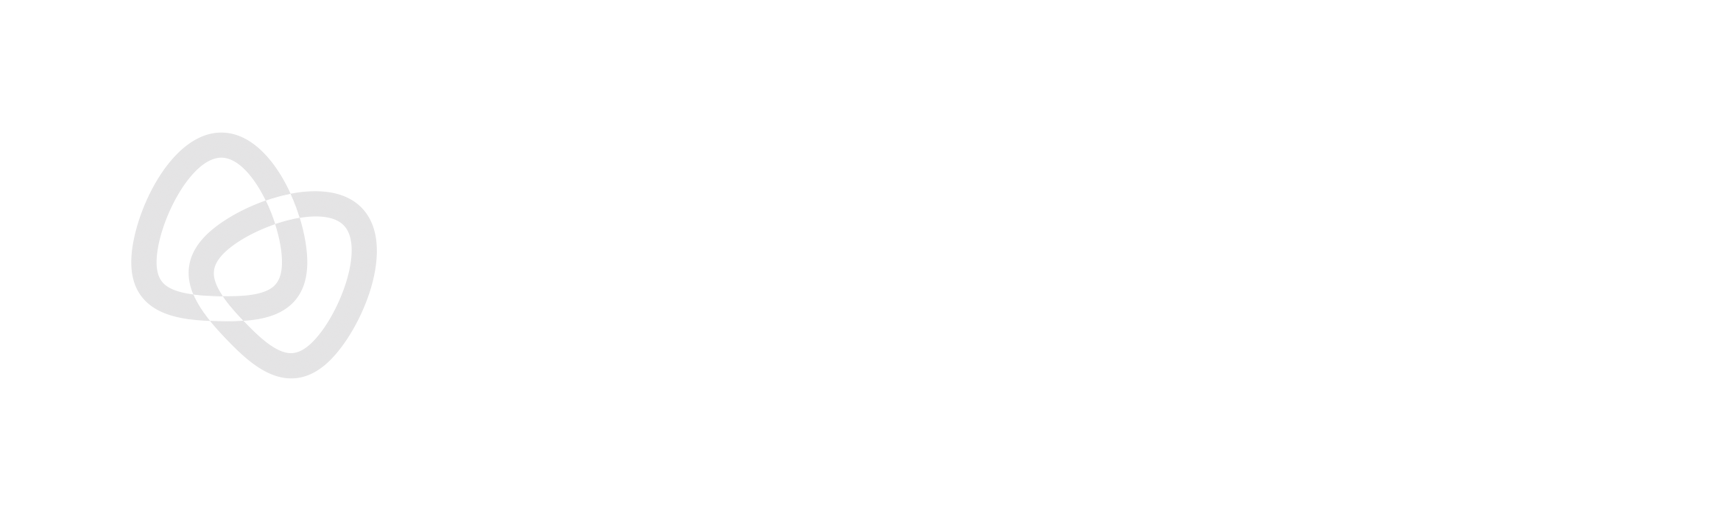 Condensed Reversed VentureWeb Logo